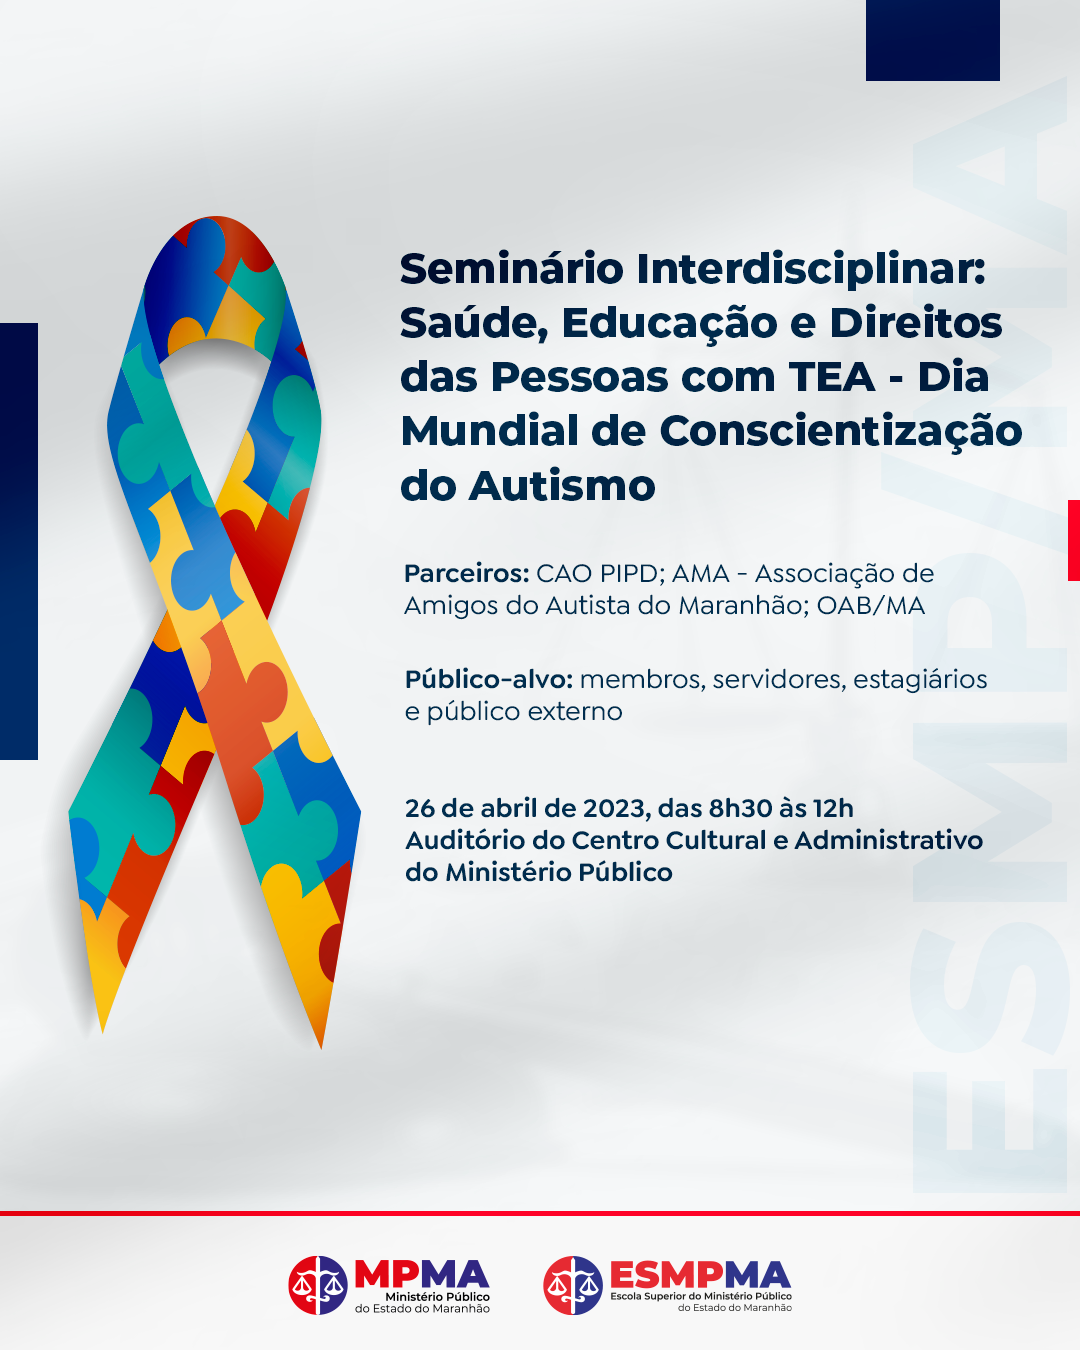 Seminário Interdisciplinar: Saúde, Educação e Direitos de Pessoas com TEA - Dia Mundial da Conscientização do Autismo